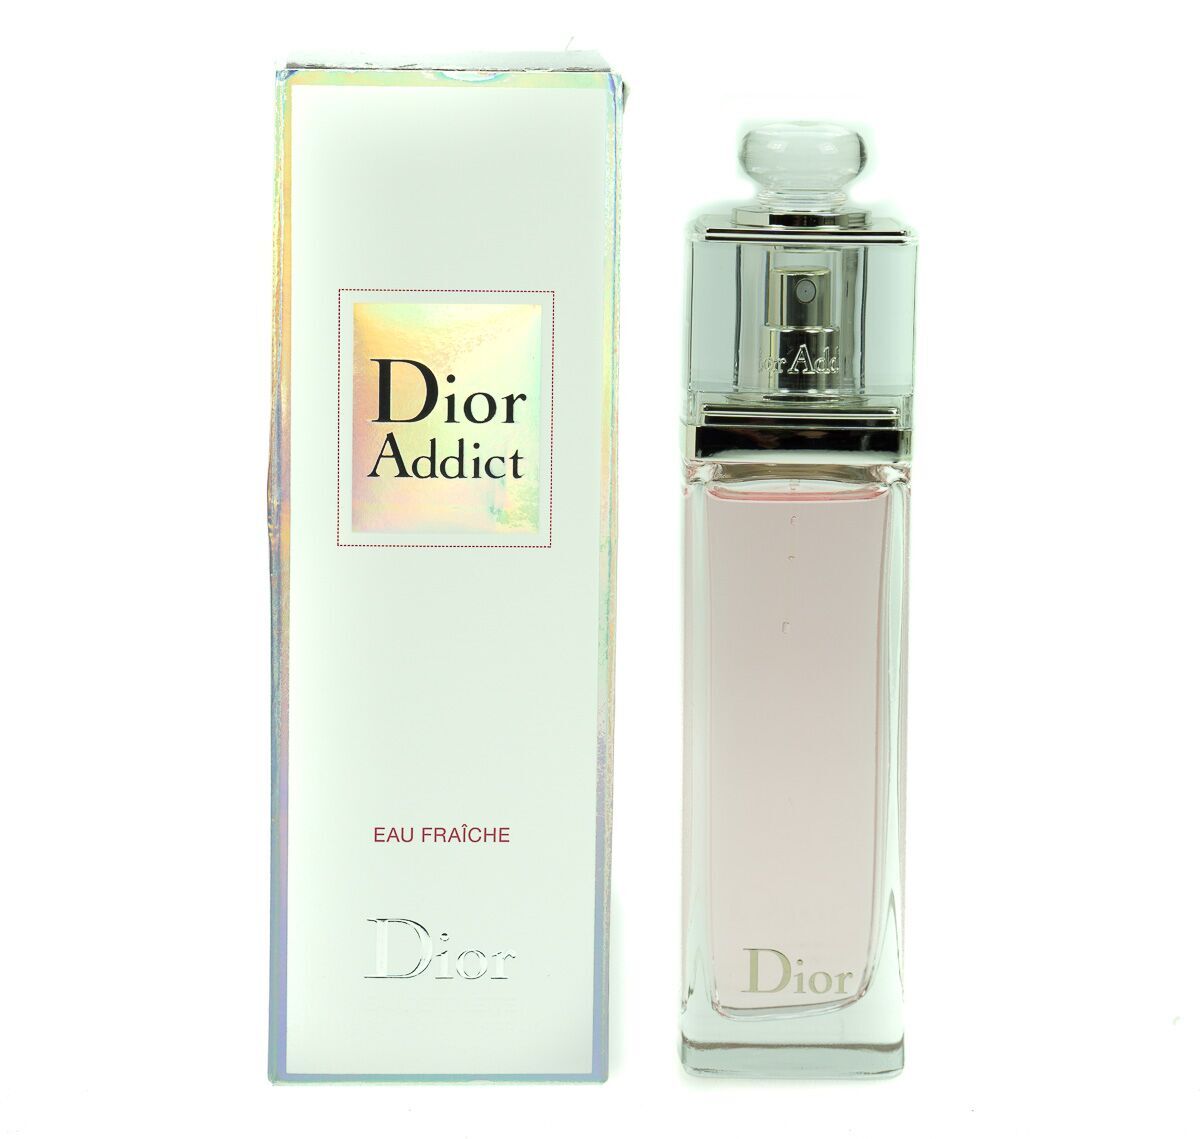 Dior Addict Eau Fraiche 50ml Eau De Toilette (Blemished Box)